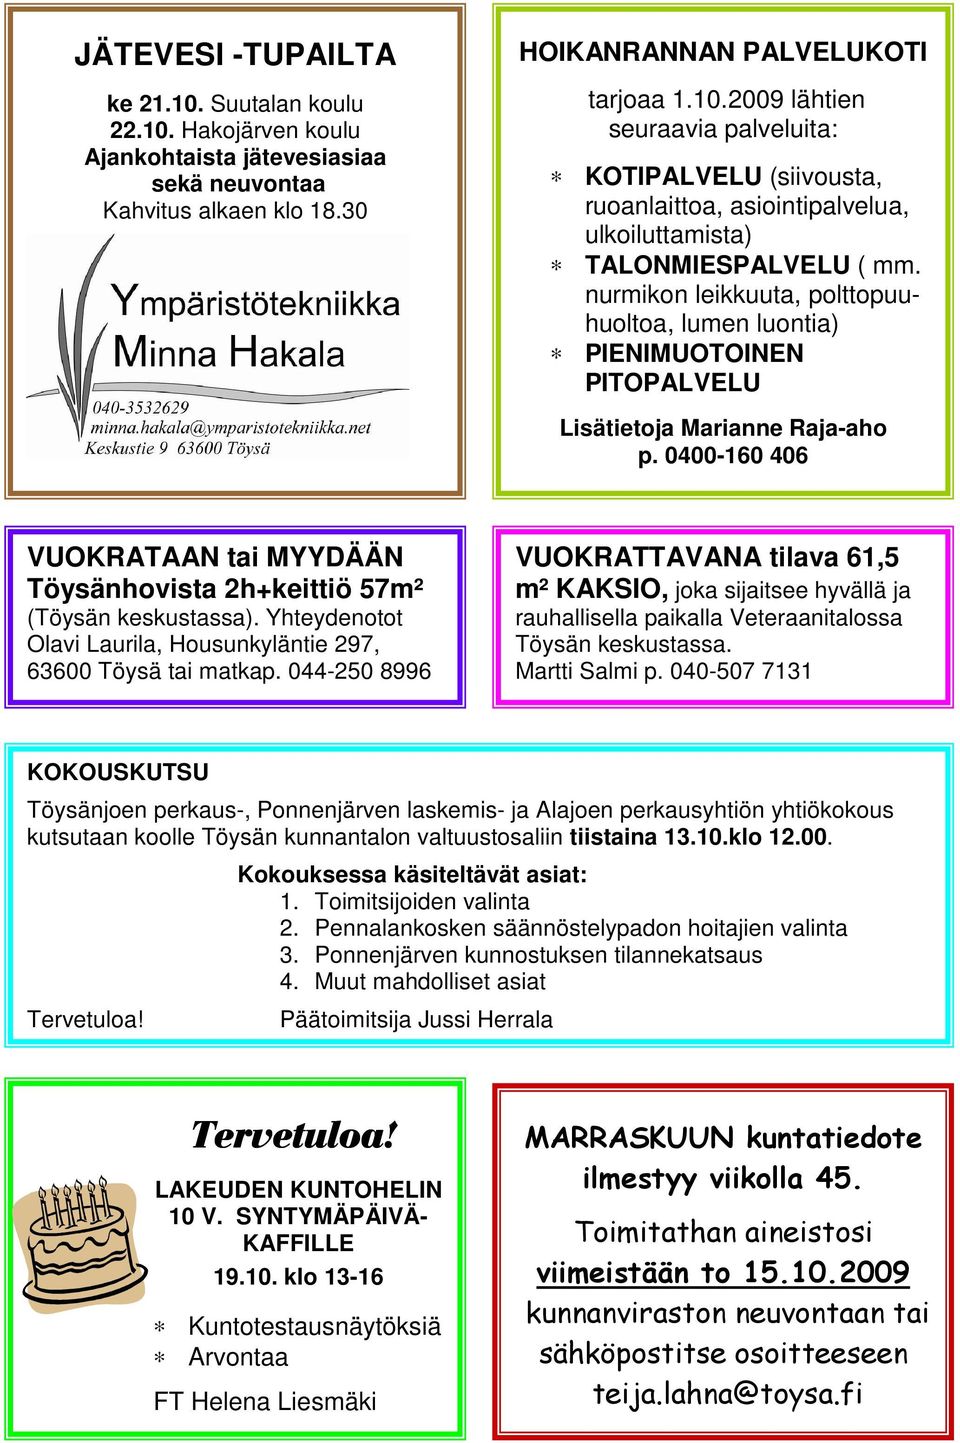 Yhteydenotot Olavi Laurila, Housunkyläntie 297, 63600 Töysä tai matkap.